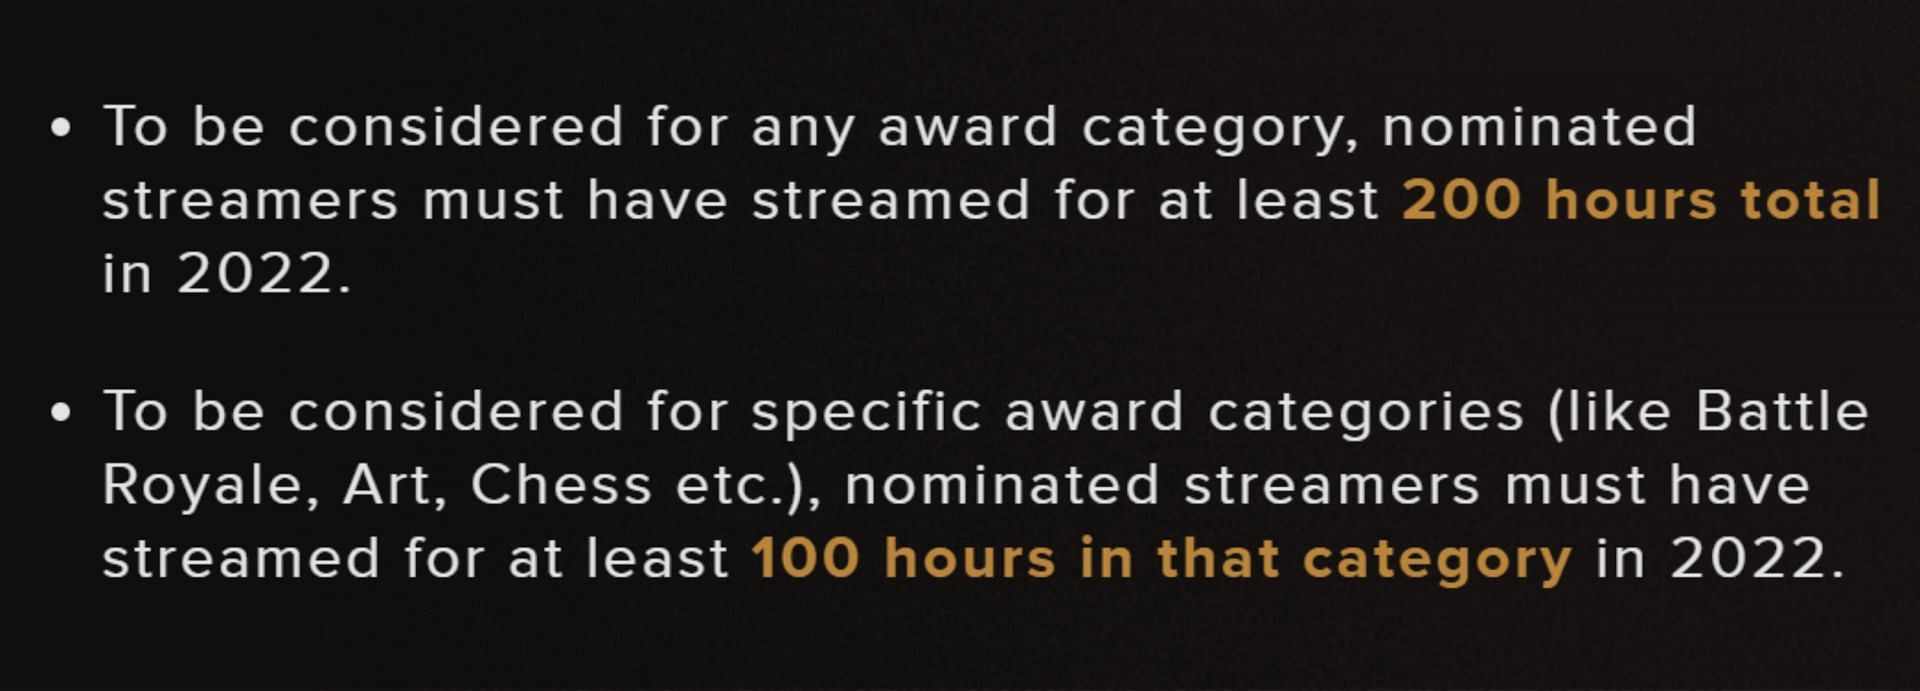 Criterios para los nominados (Imagen a través de Streamerawards.com)